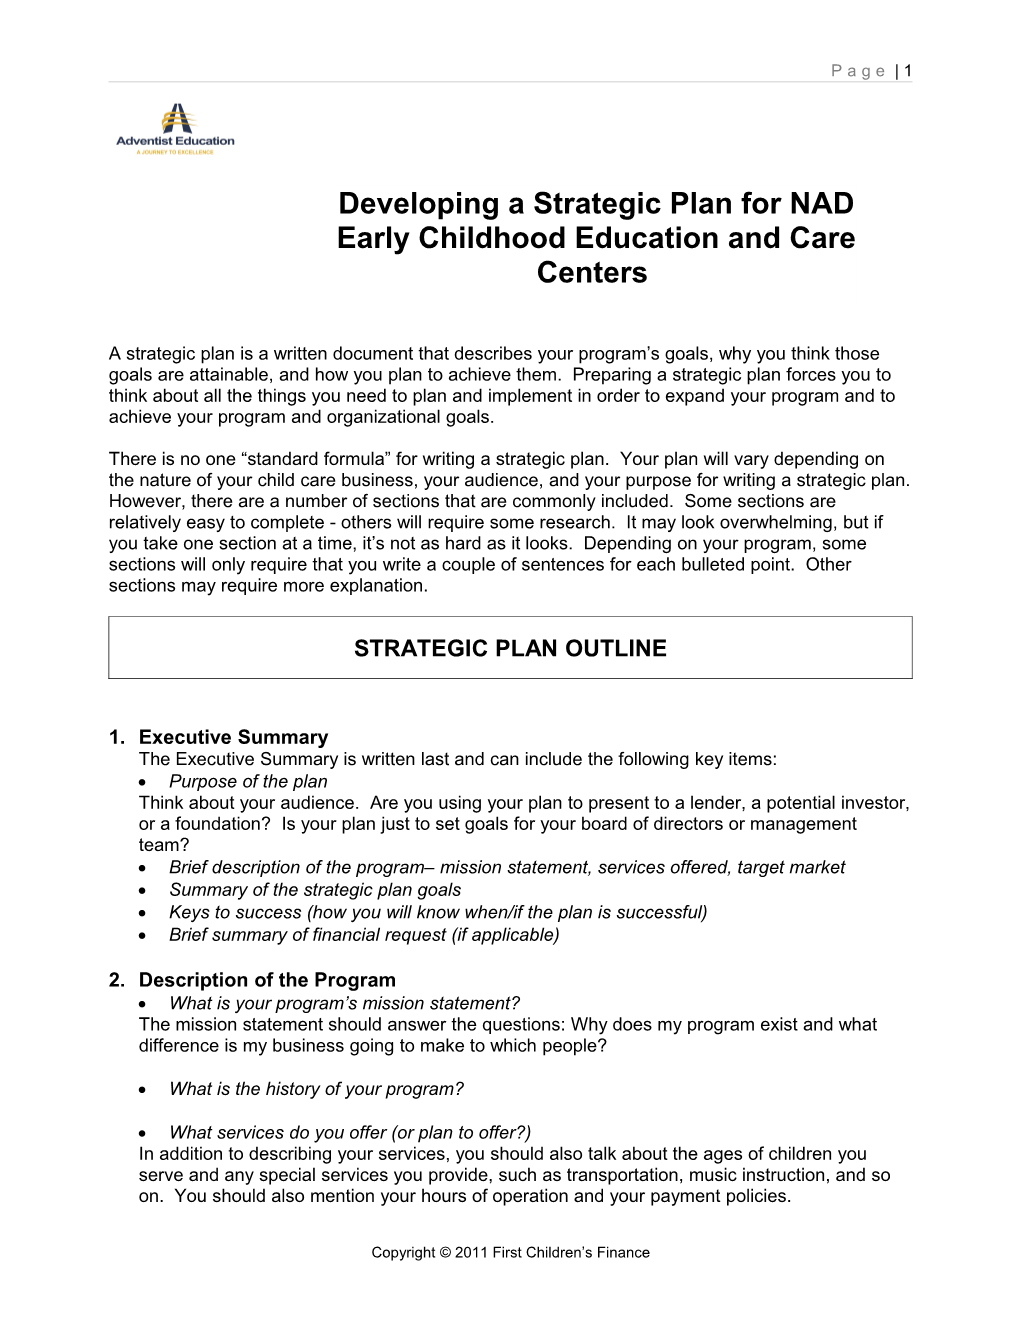 Strategic Plan Outline